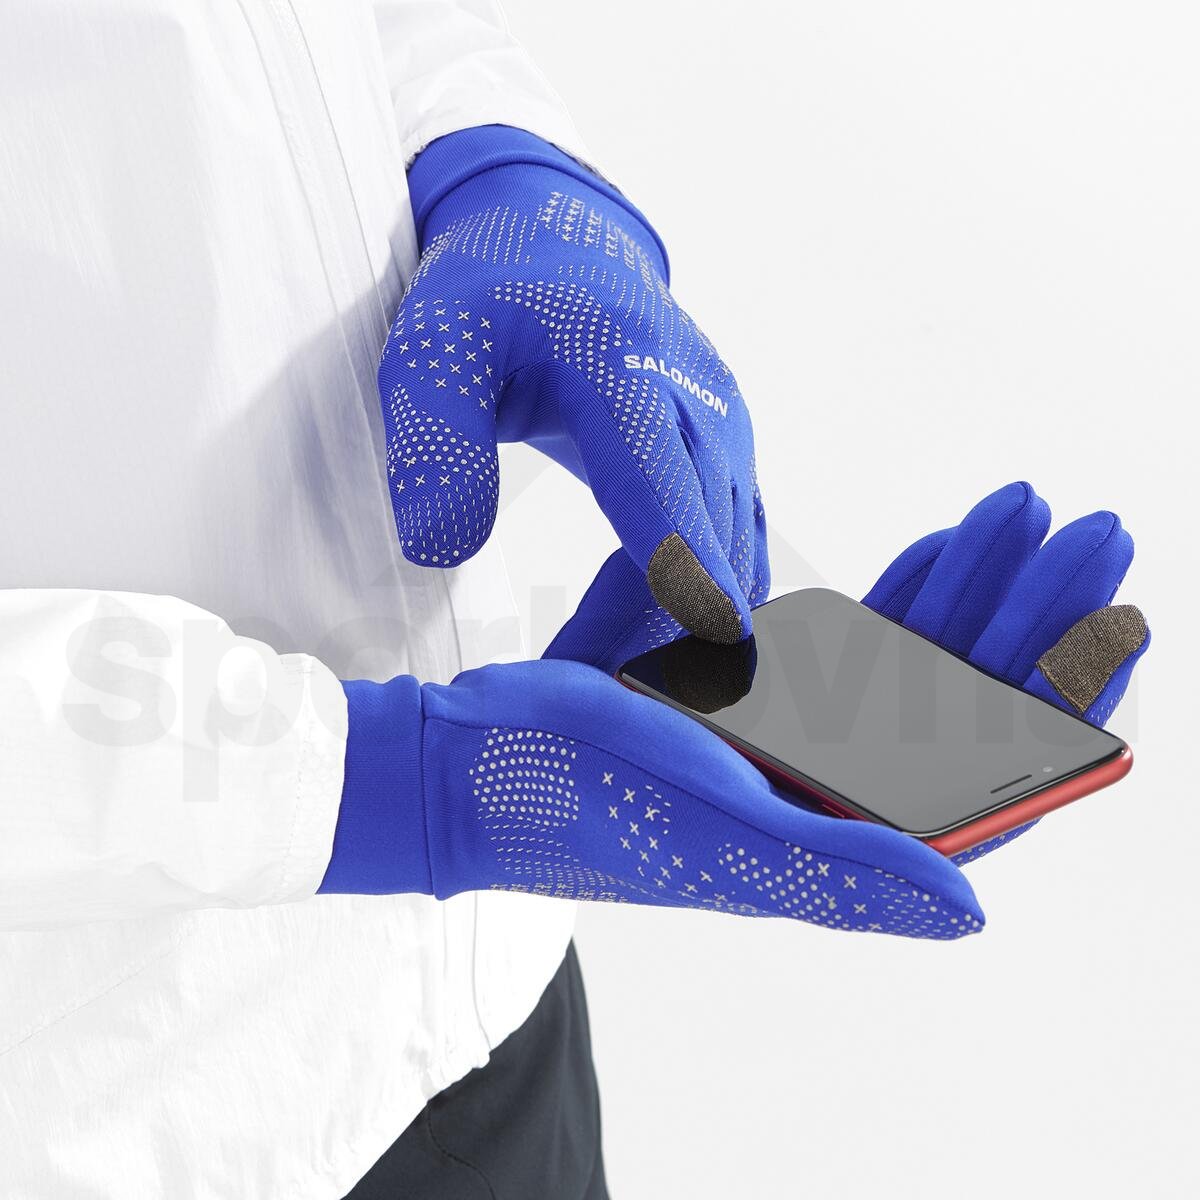 Rukavice Salomon Cross Warm Glove - modrá